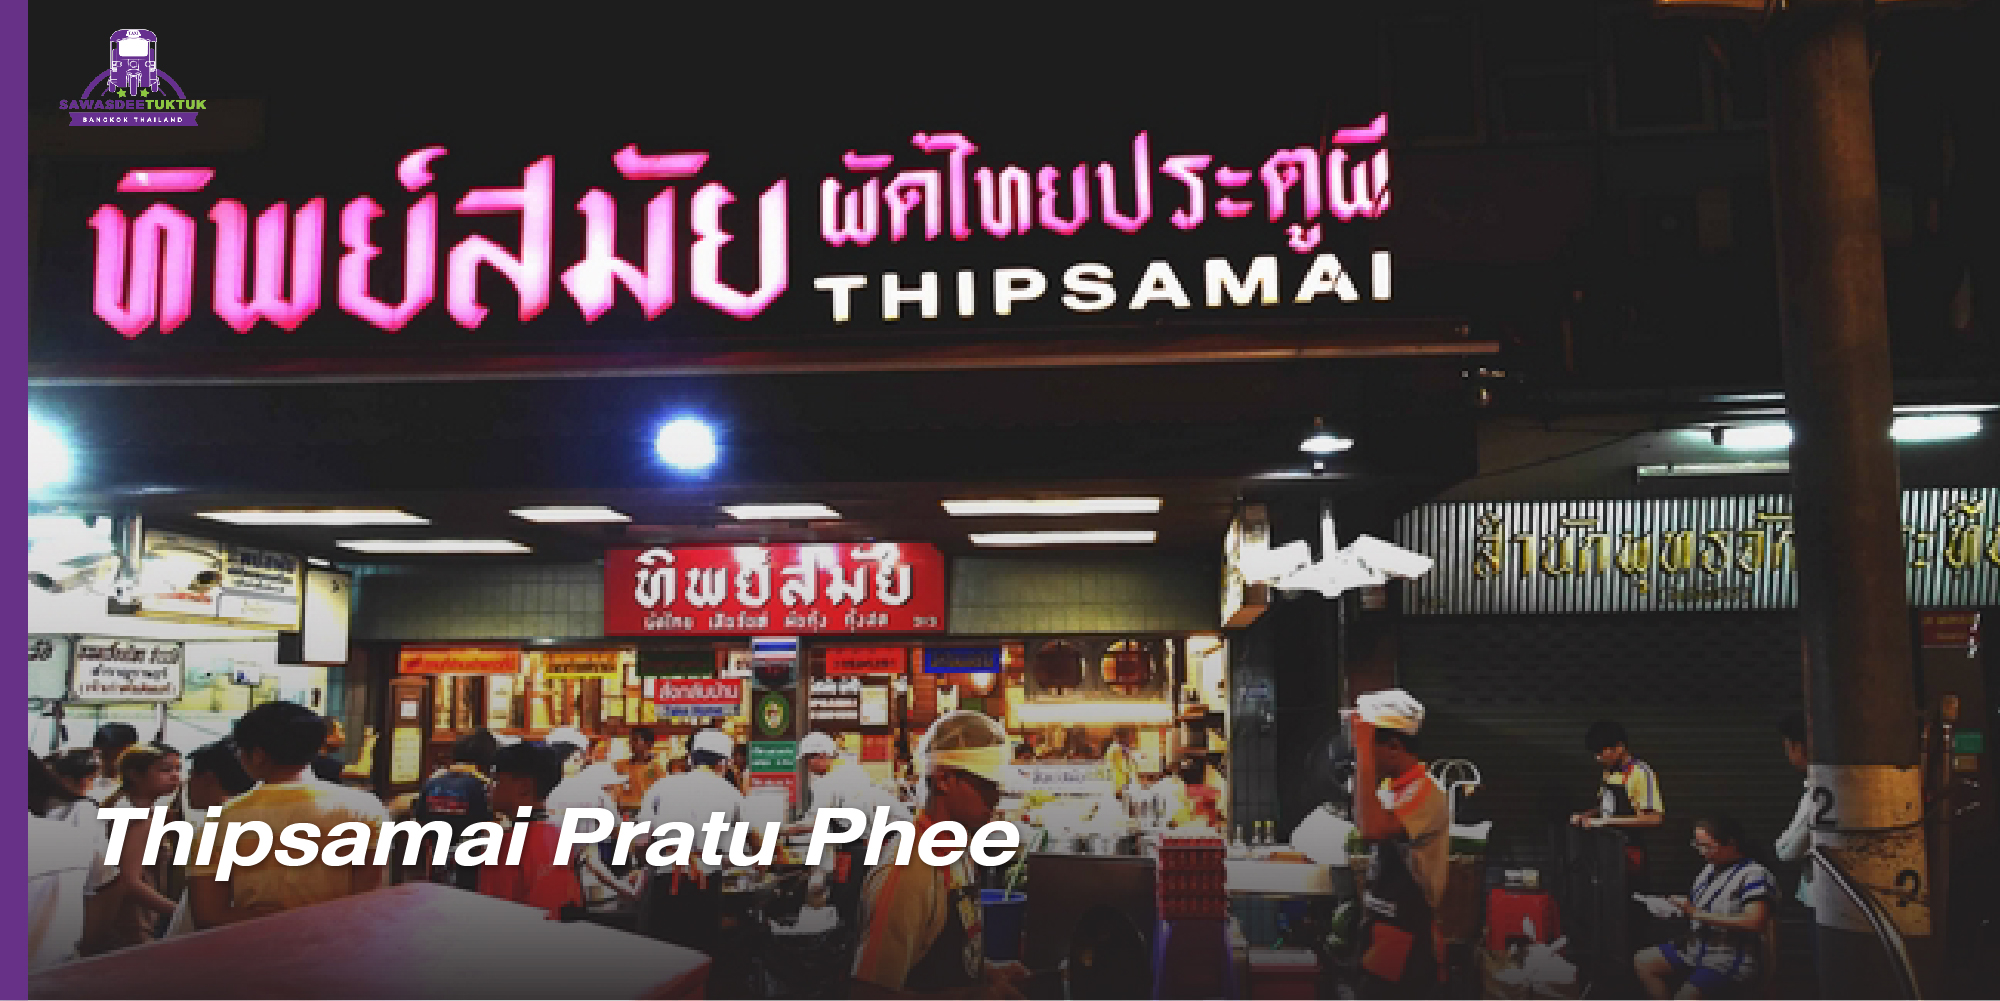 Thai Streets Food